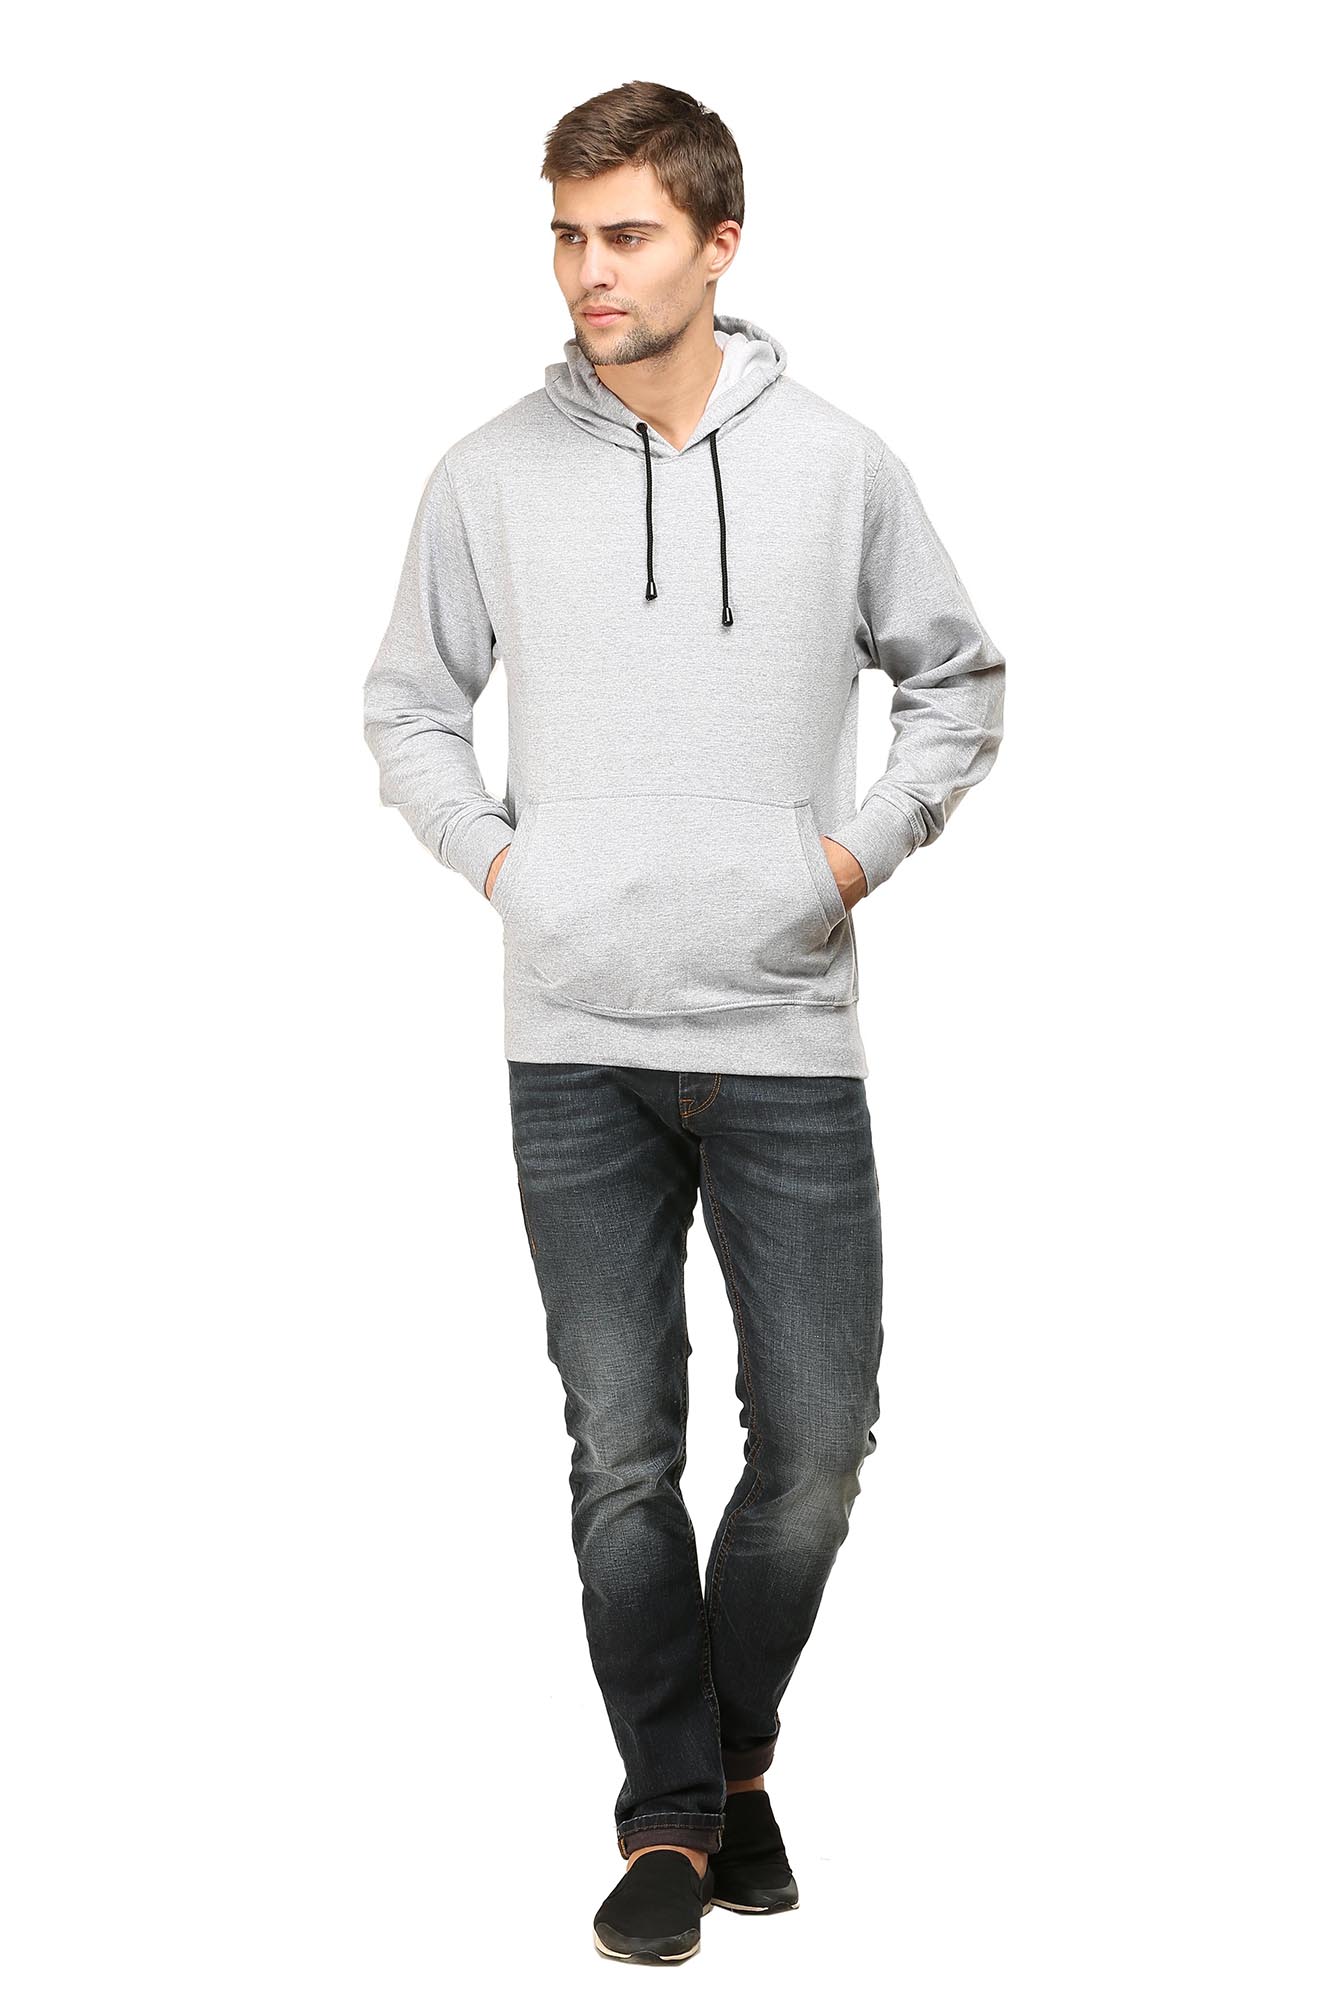 Men's Gray Hoodie Sweatshirt